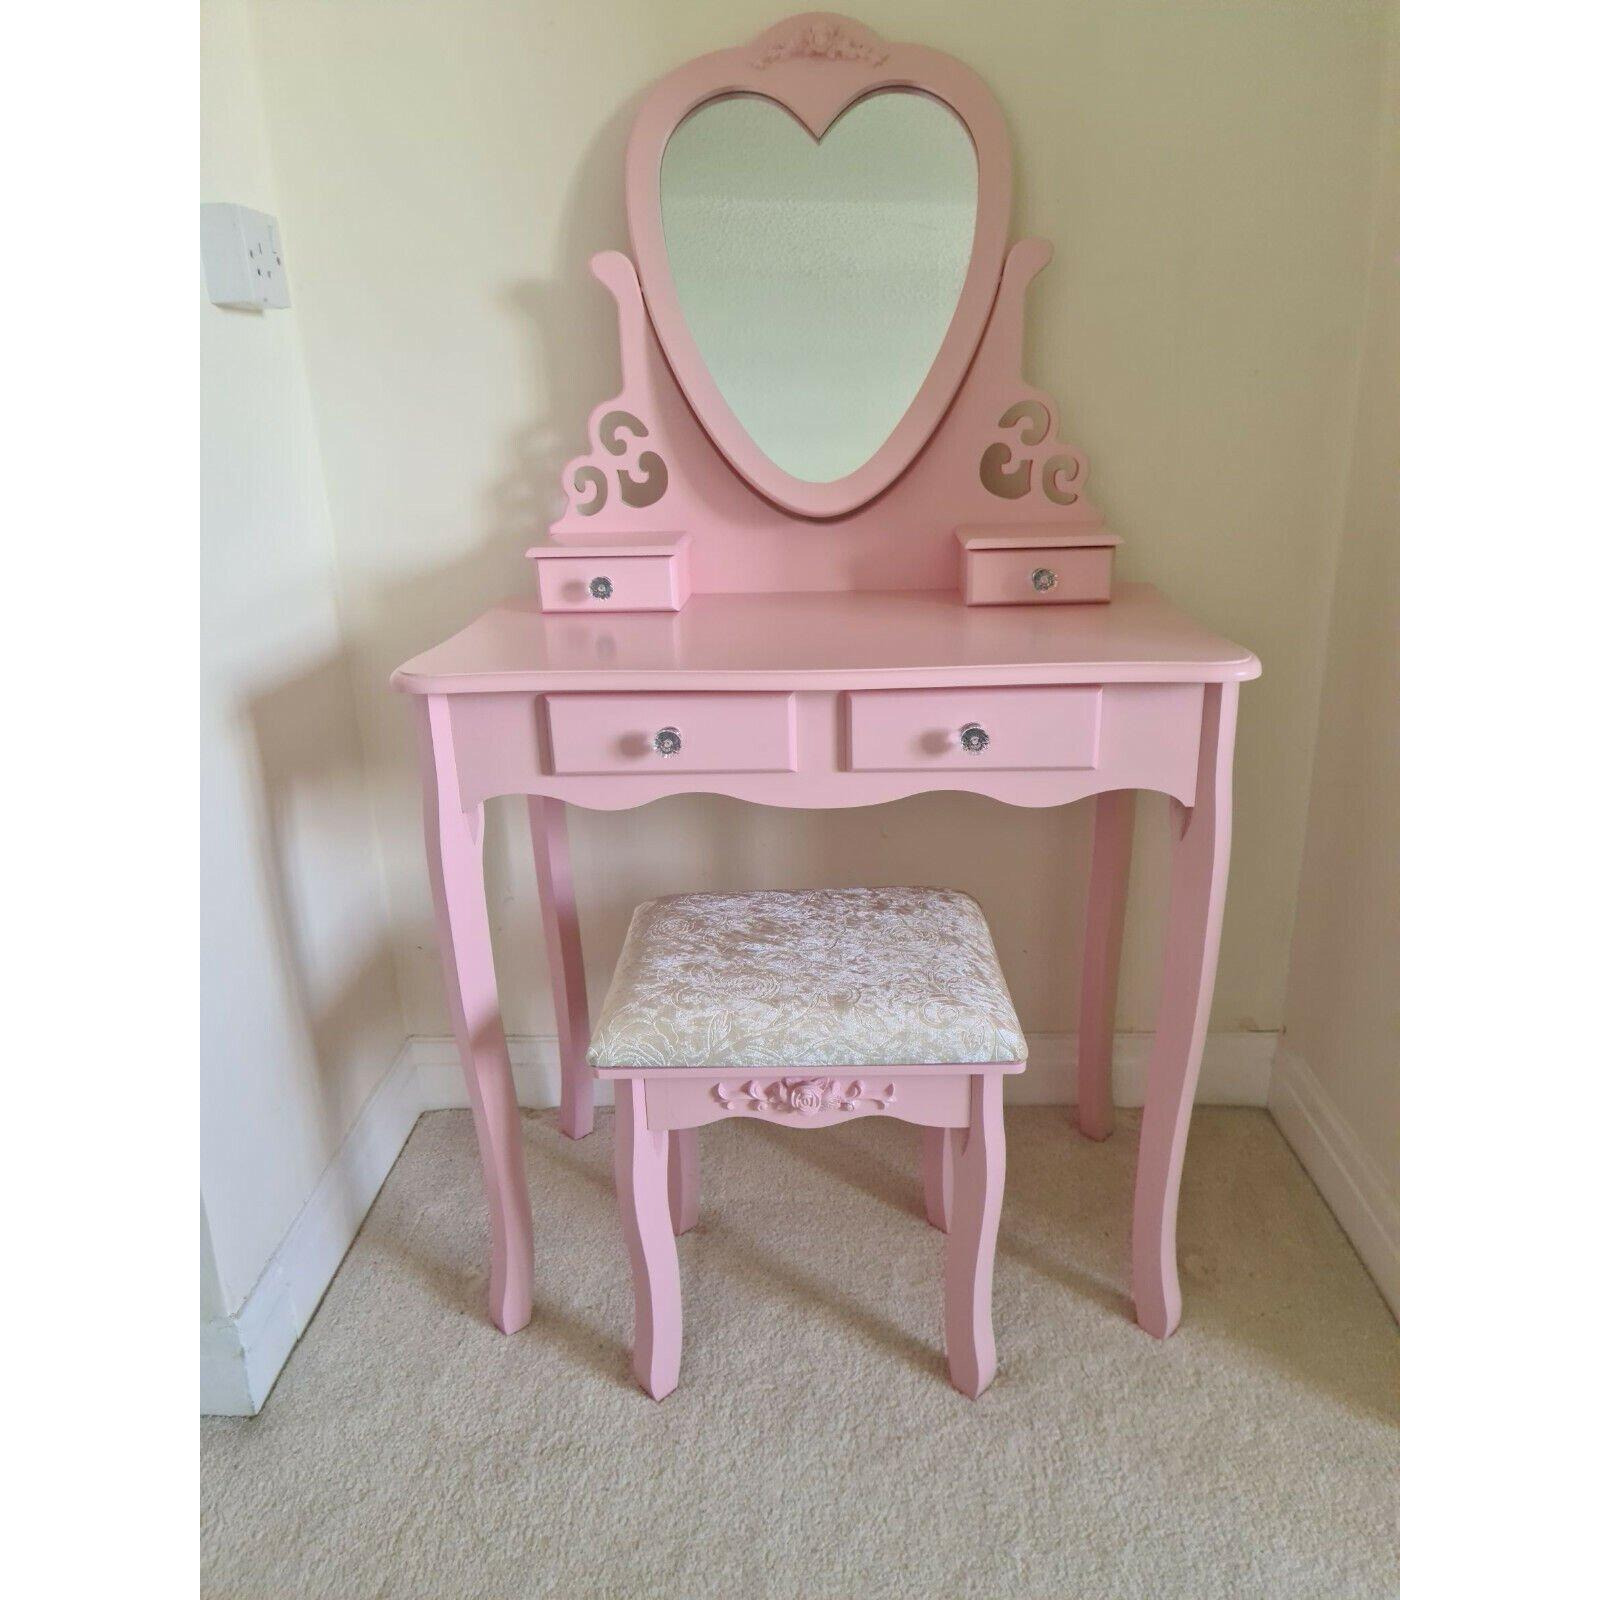 Dressing Table With Mirror Stool Vanity Dresser Vanity Bedroom Pink Love Heart - image 1